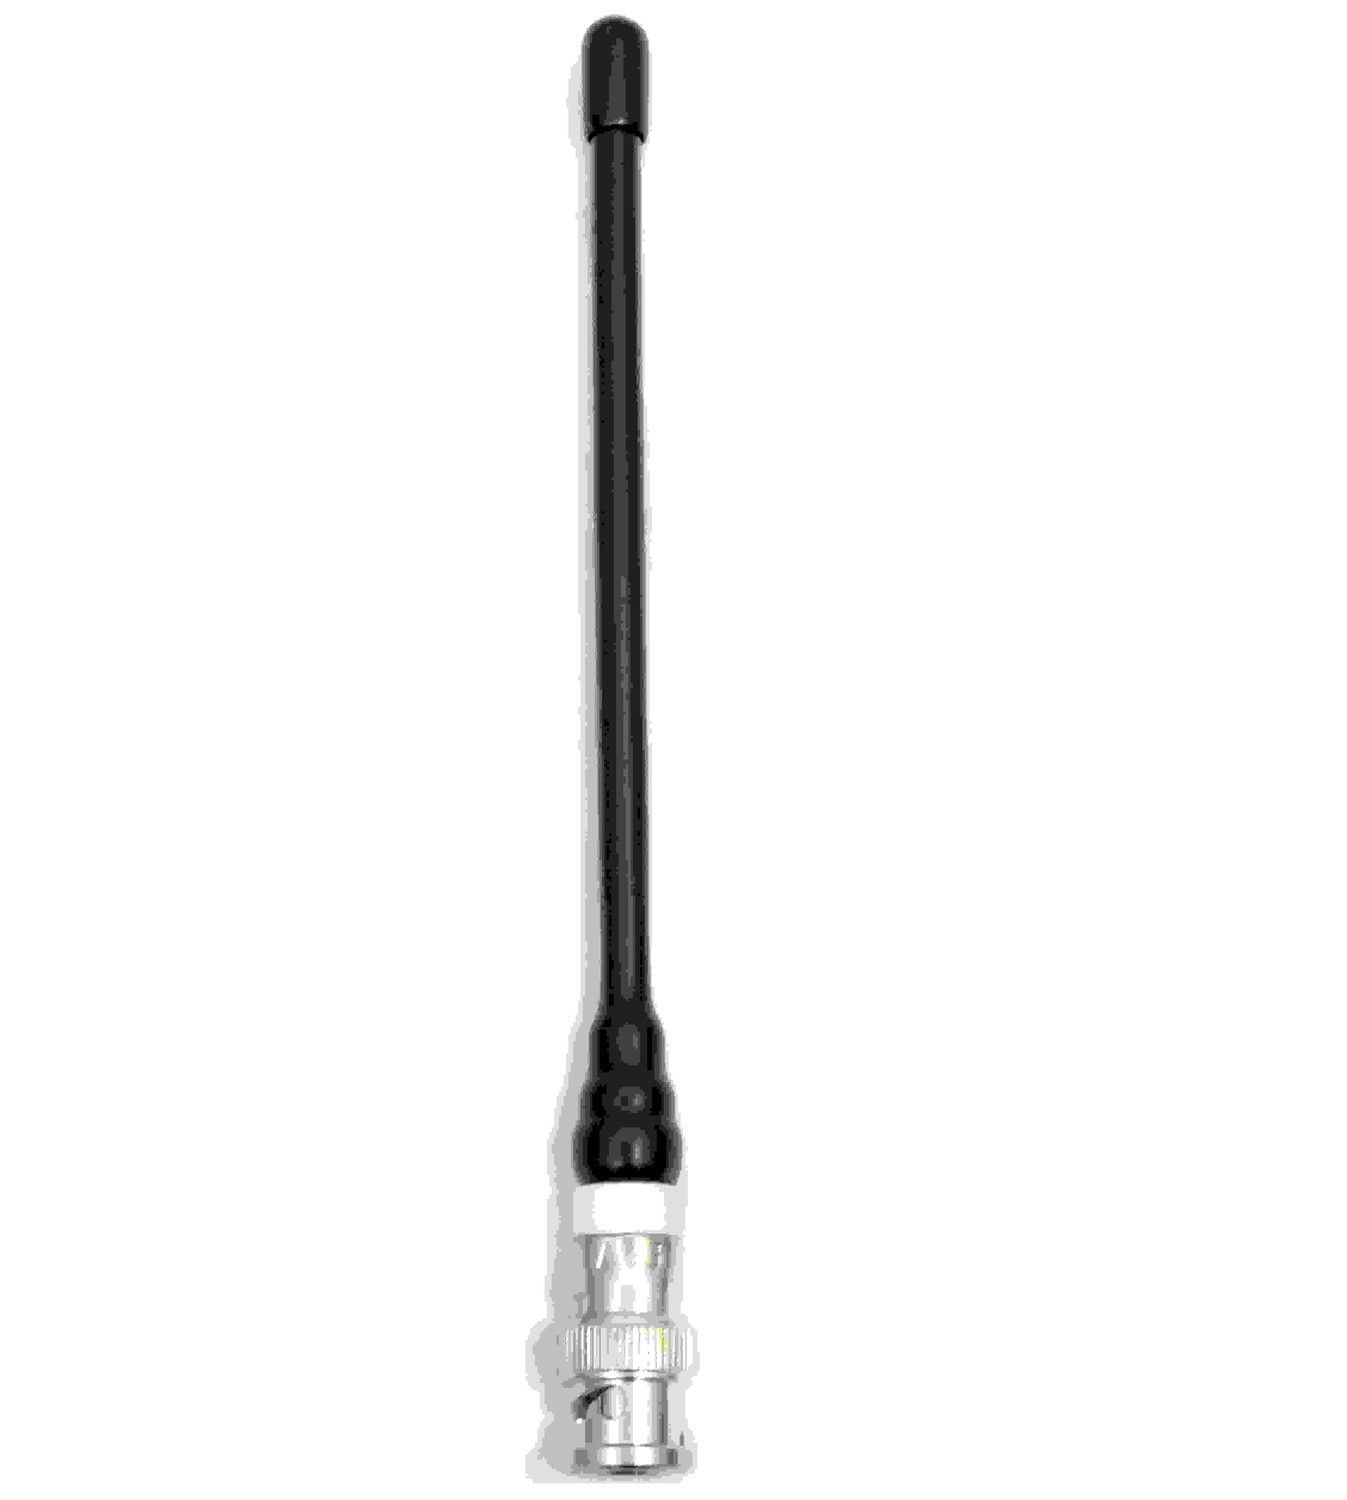 470-512 Mhz Antenna C470Bn